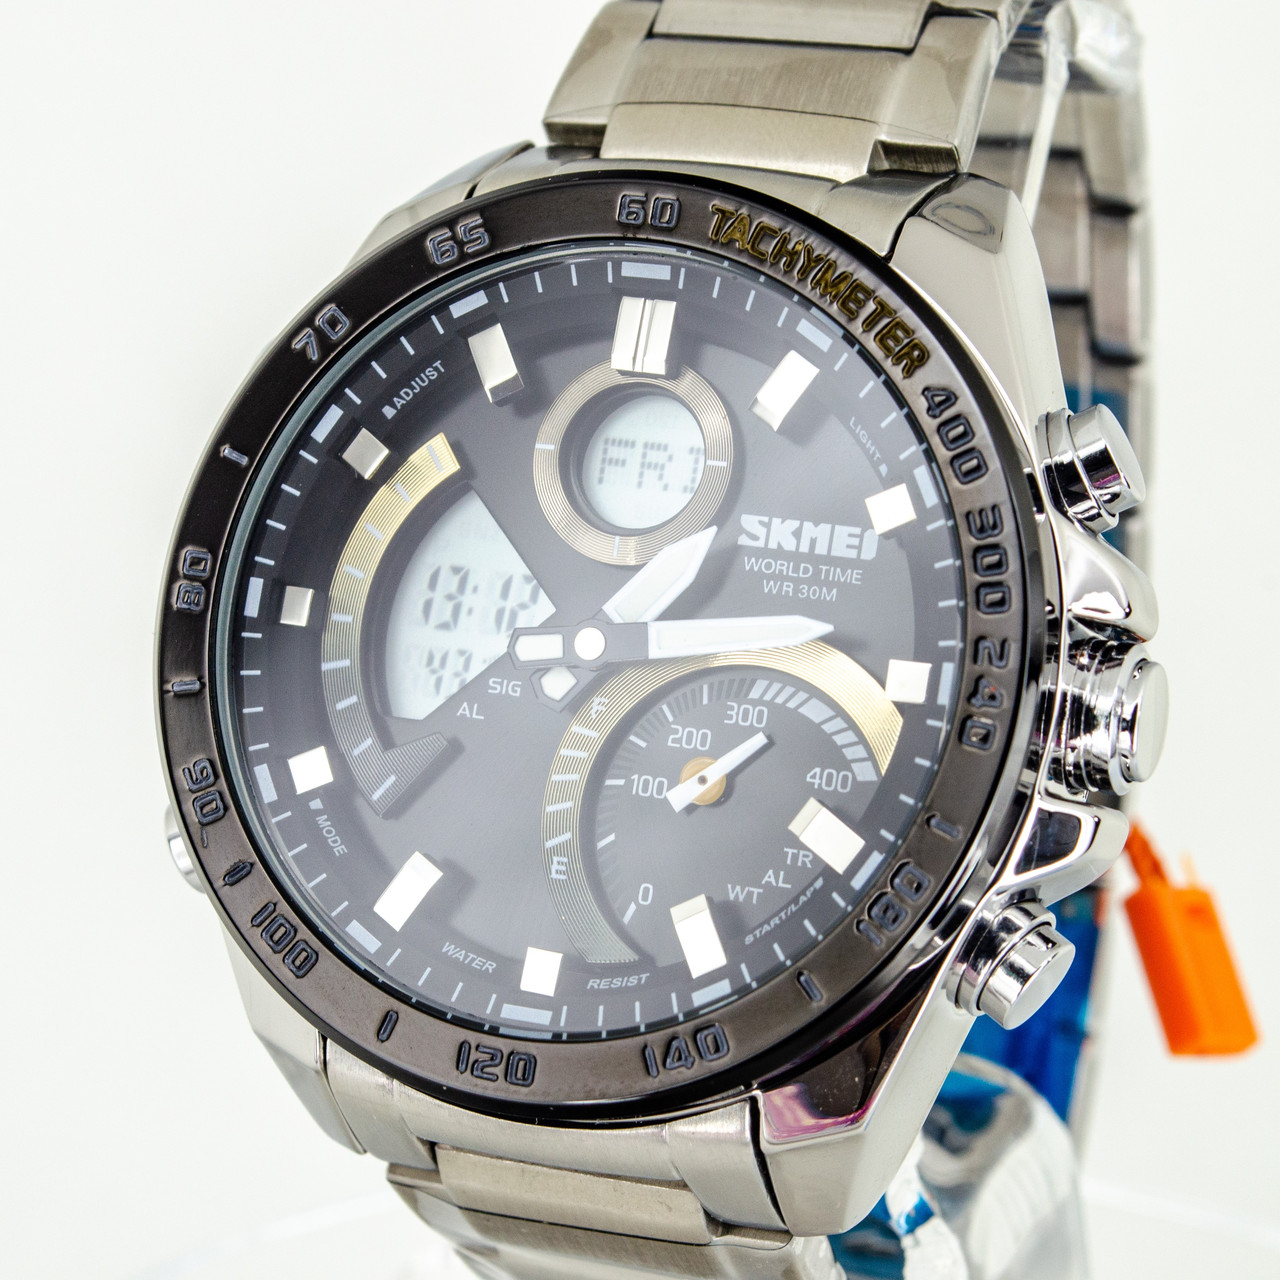 Чоловічий кварцевий наручний стрілочний годинник з хронографом Skmei WQ010. Металевий браслет.